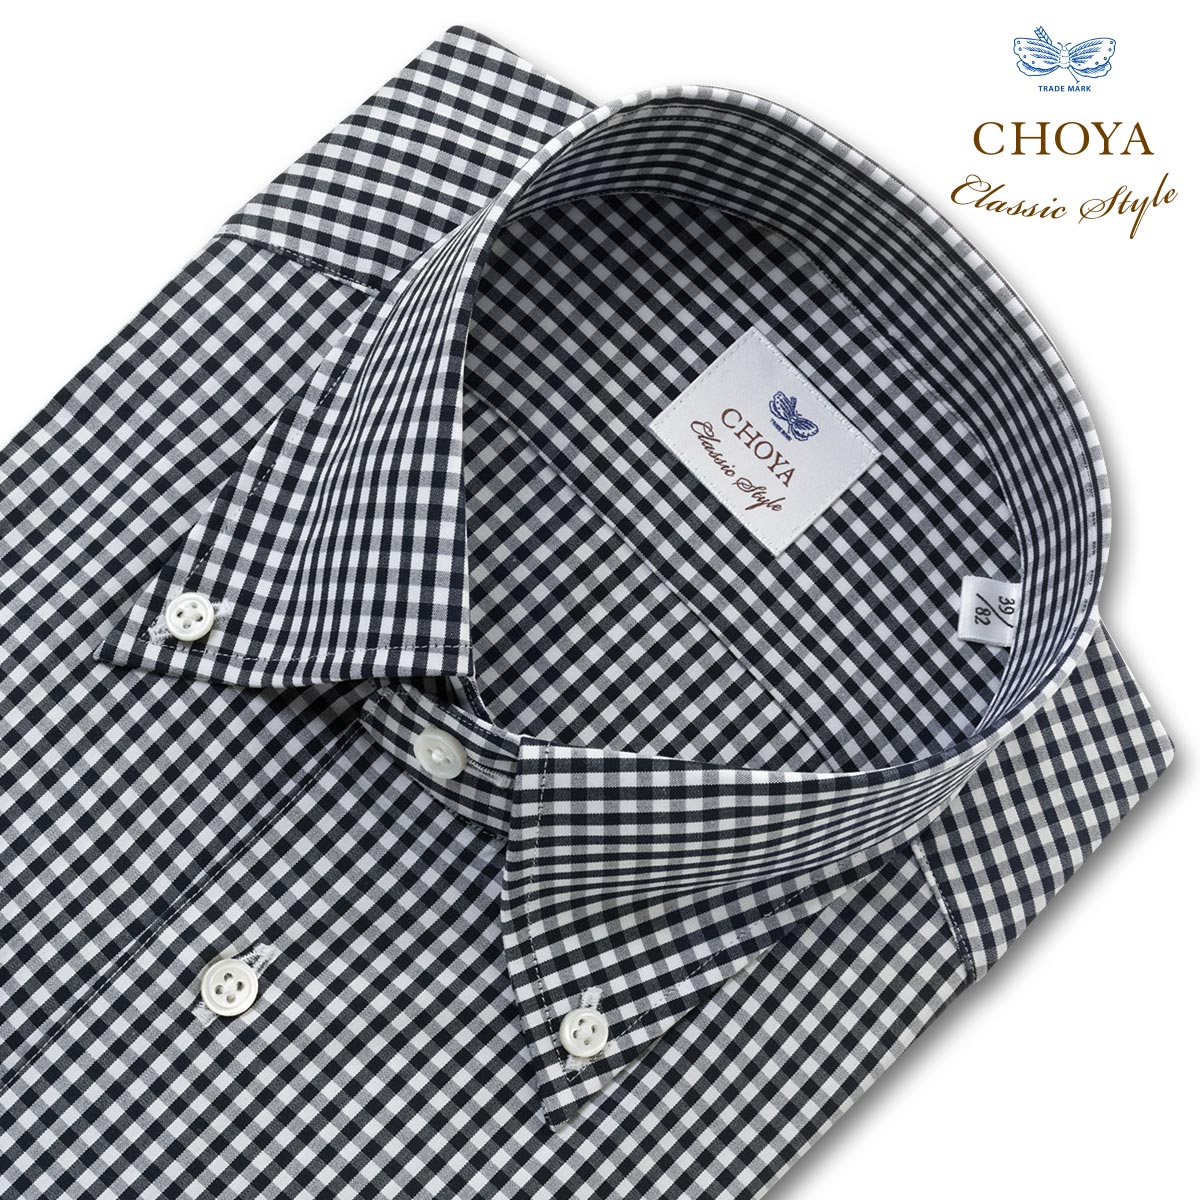 長袖 ワイシャツ メンズ CHOYA Classic Style スリムフィット Yシャツ ブラック ホワイト ギンガムチェック ボタンダウンカラー 綿100 (ccd907-585)